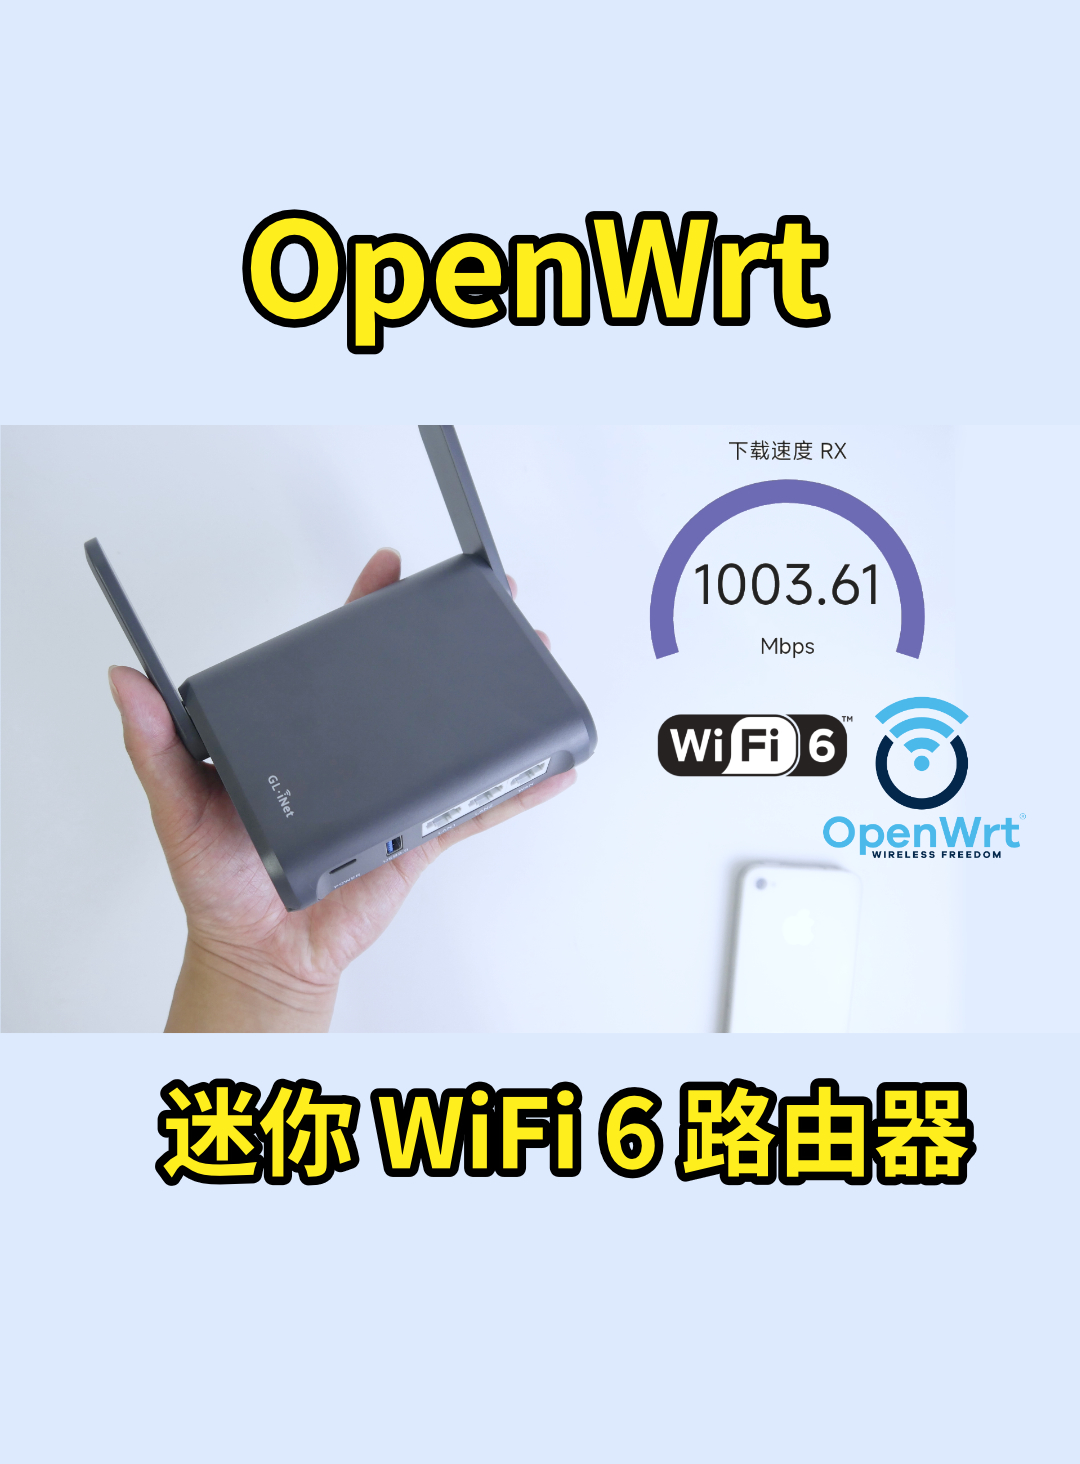 巴掌大的 WiFi6 路由器，openwrt 系统随意编译